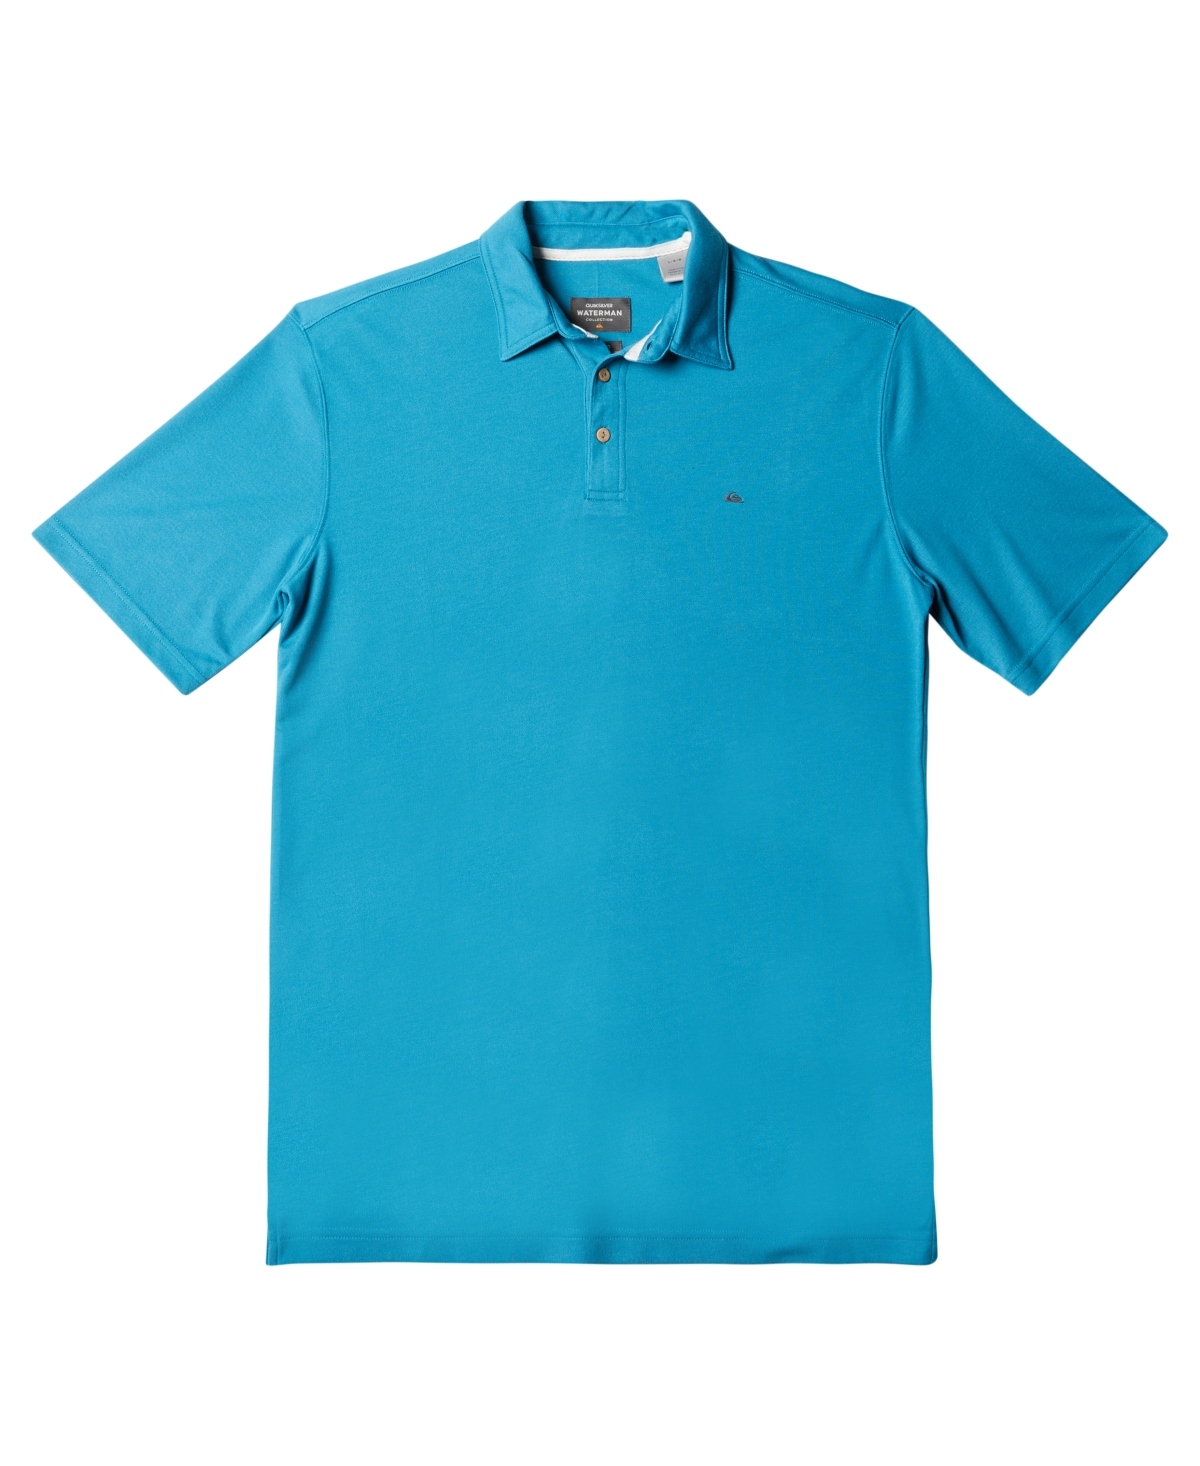 Men's Water Polo 3 Short Sleeve Polo Shirt - Sea Port